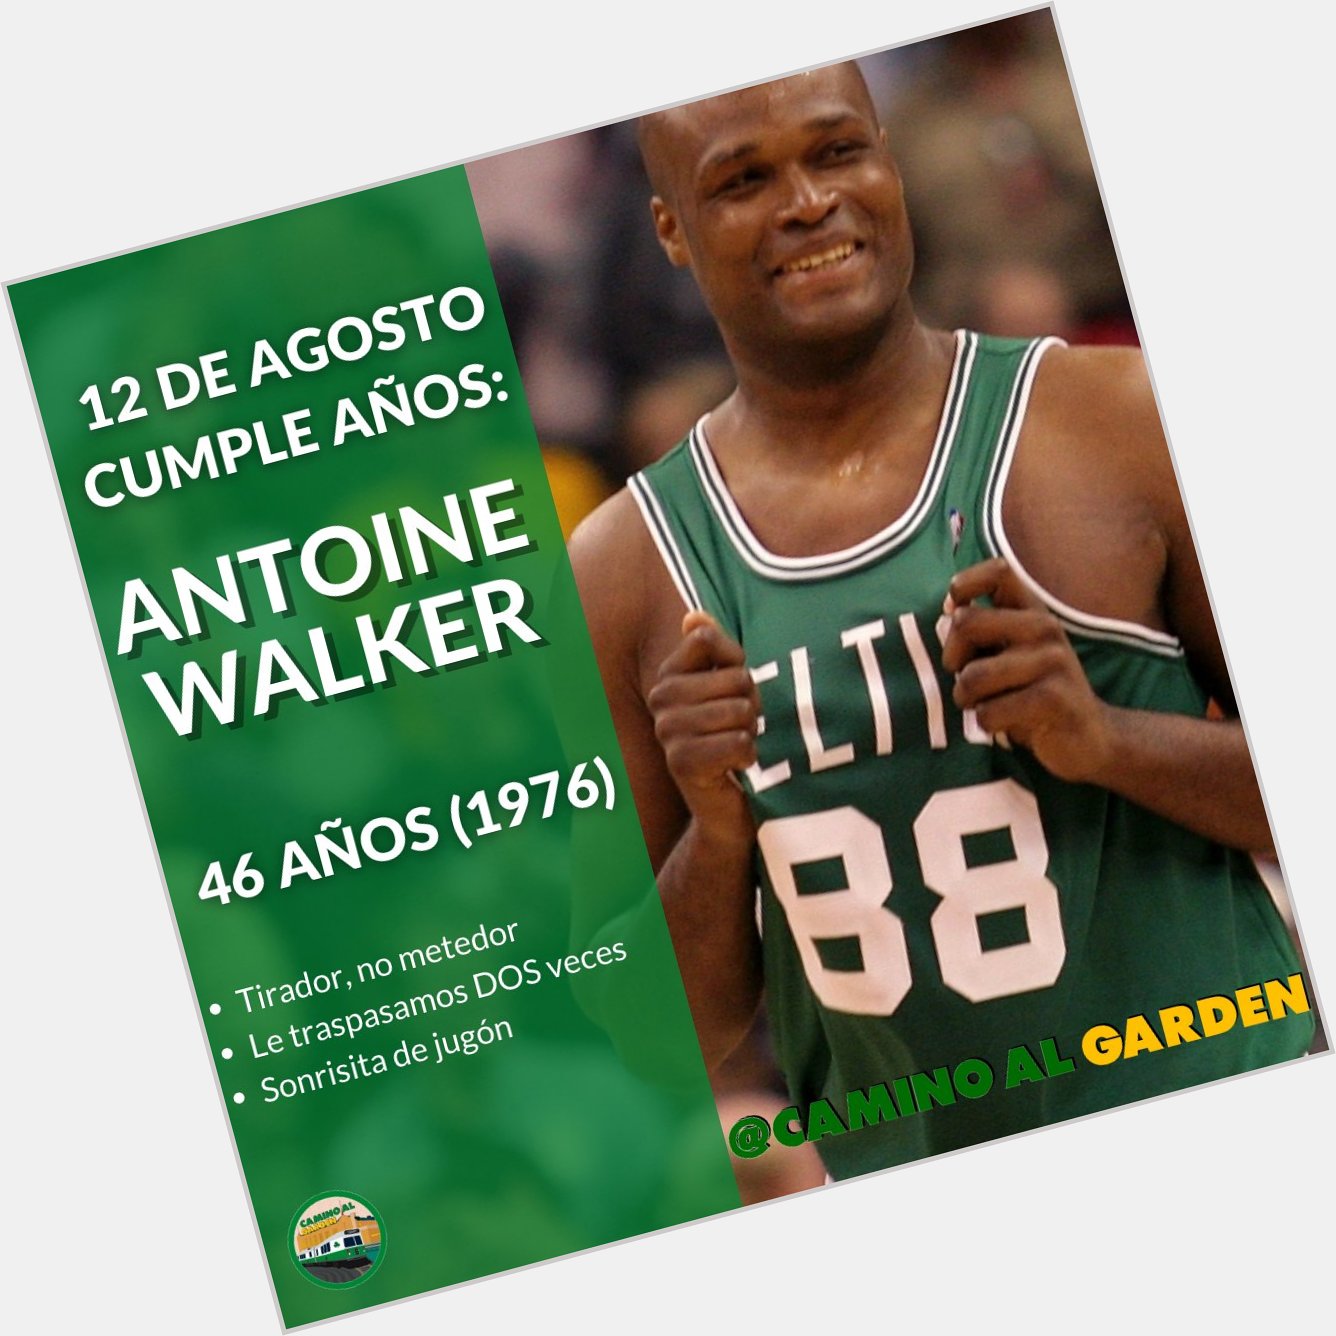 El término leyenda se creó para gente como Antoine Walker. 

Happy bday 